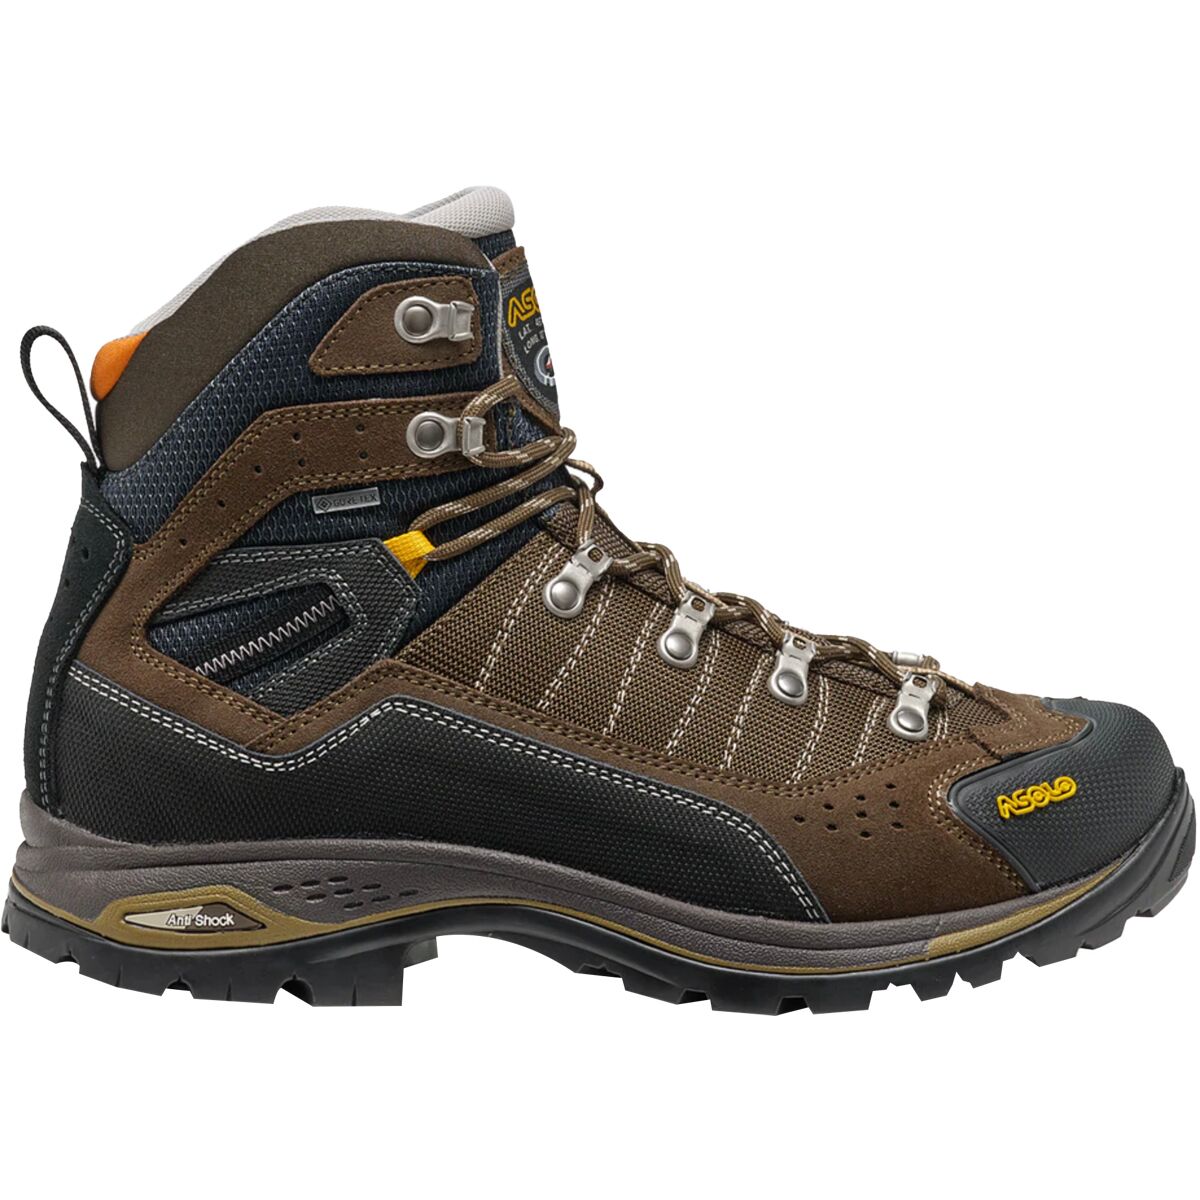 Asolo Drifter I Evo GV Hiking Boot - Men's